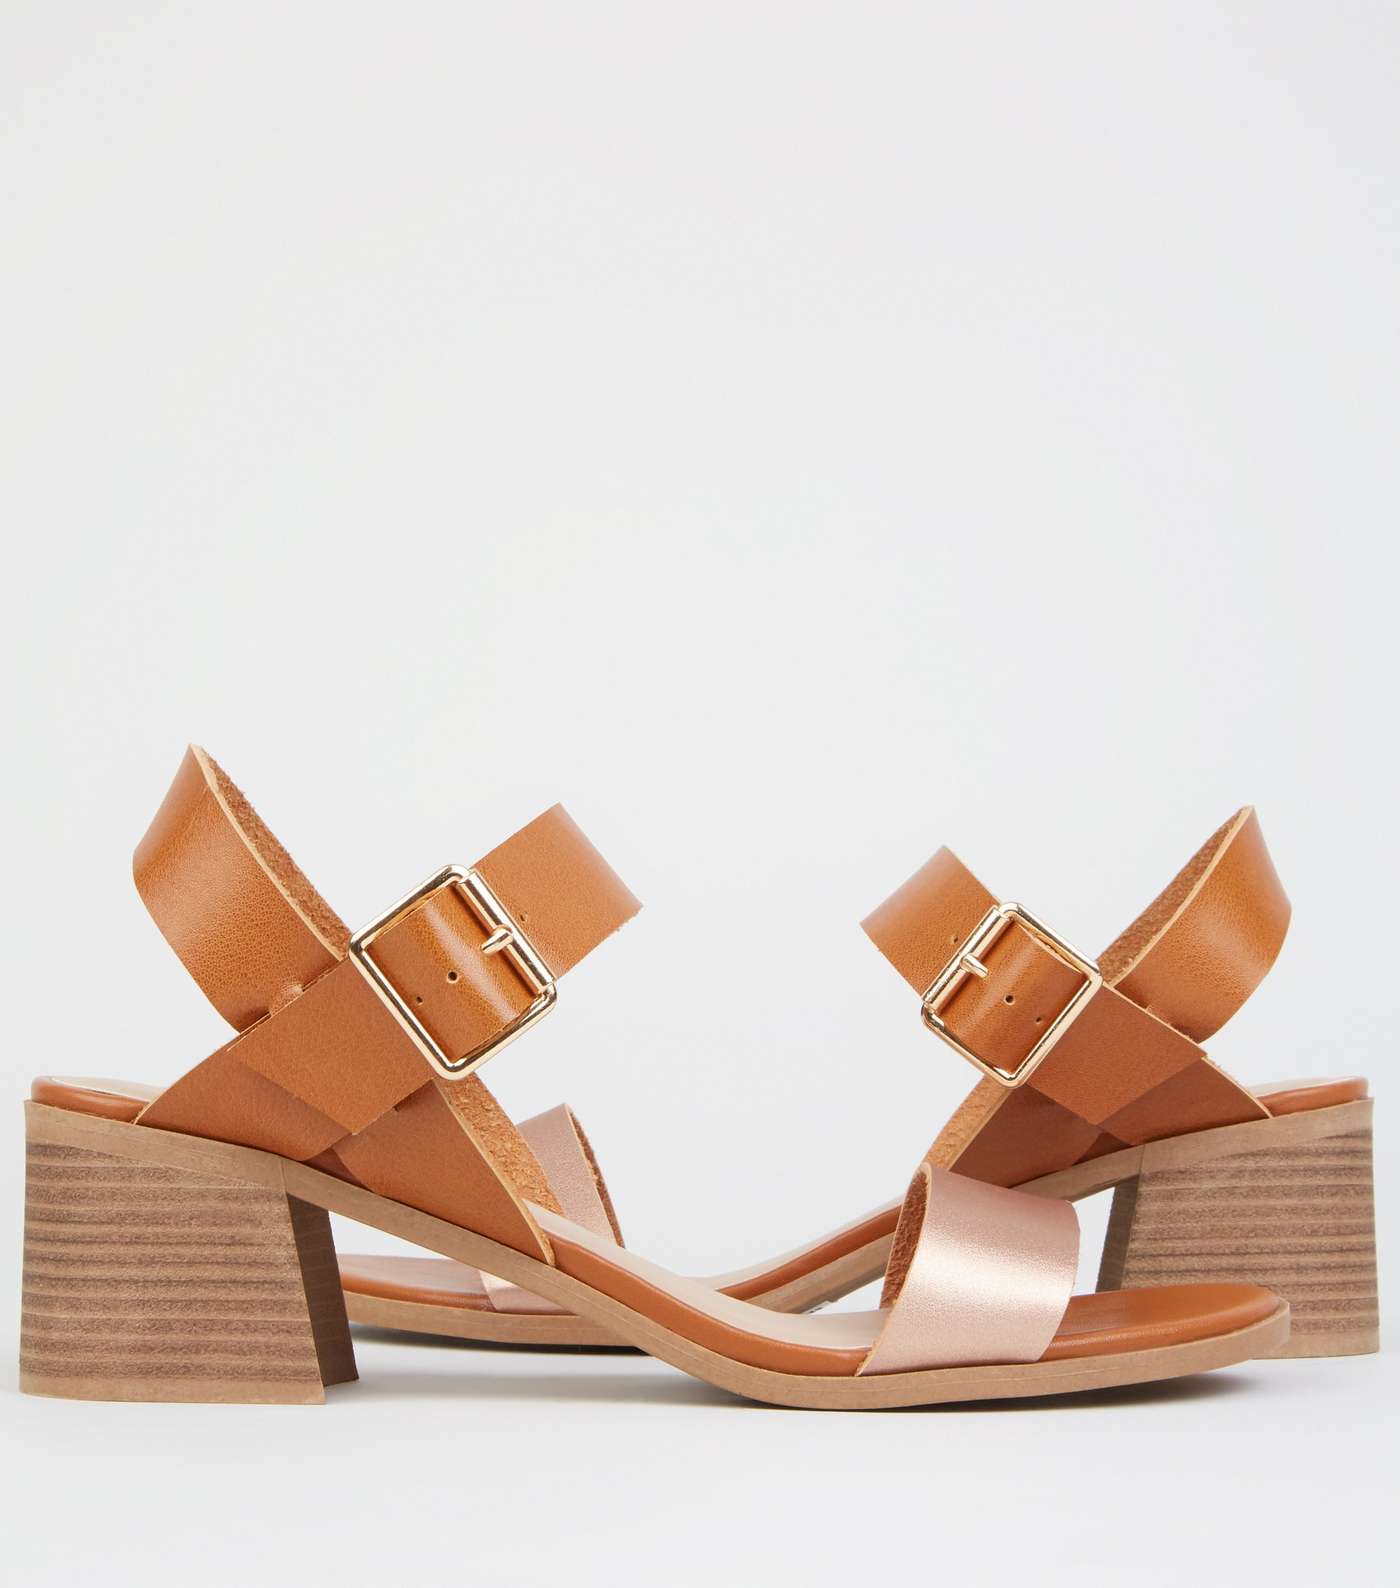 Tan Leather-Look Low Block Heel Sandals Image 3